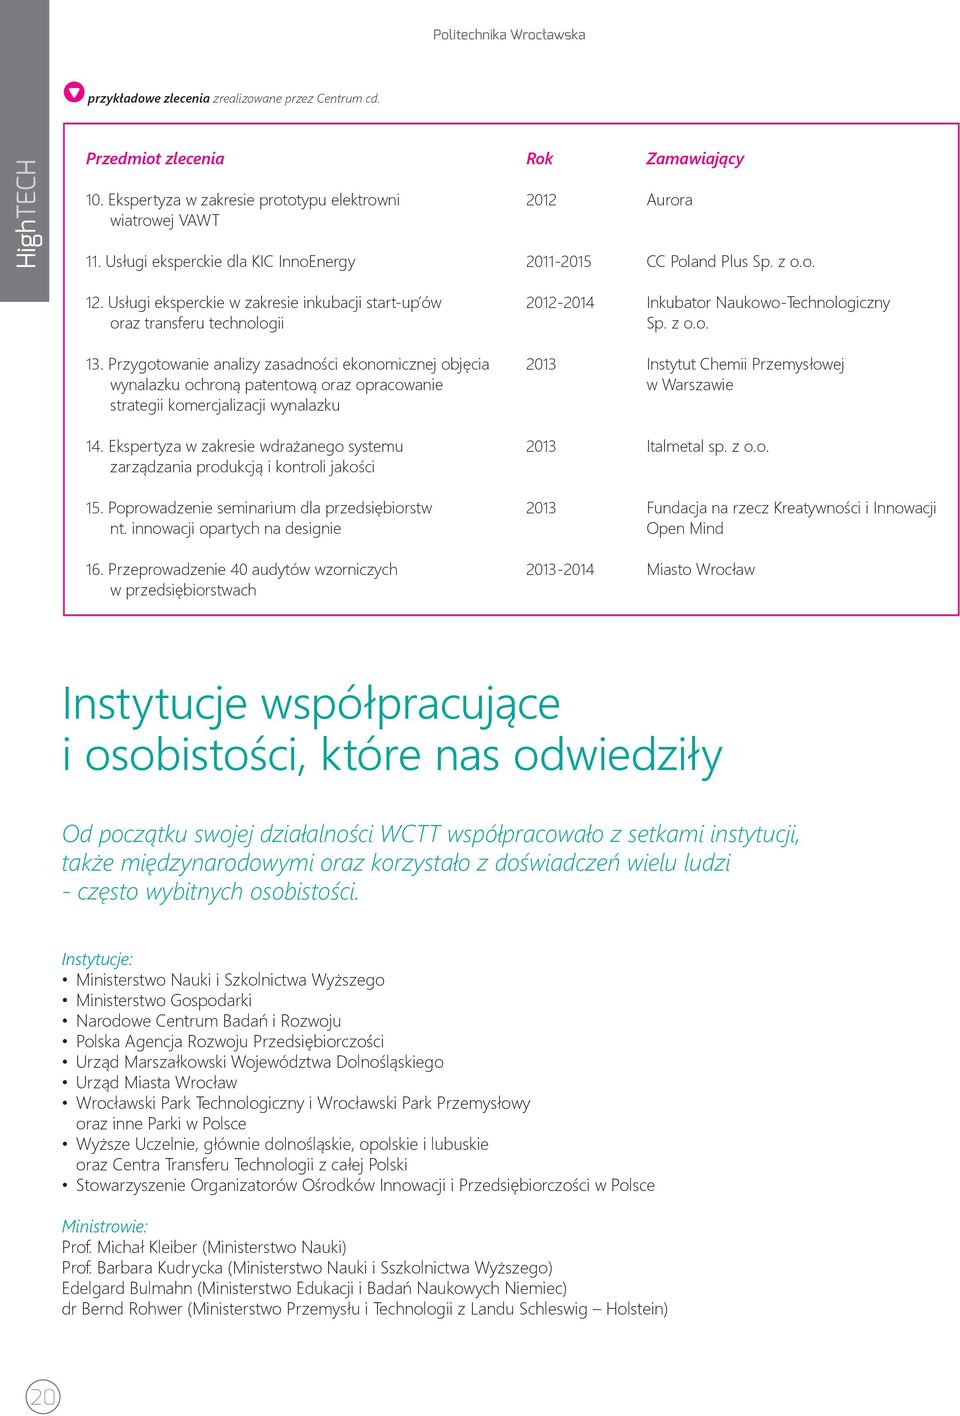 Usługi eksperckie w zakresie inkubacji start-up ów oraz transferu technologii 2012-2014 Inkubator Naukowo-Technologiczny Sp. z o.o. 13.